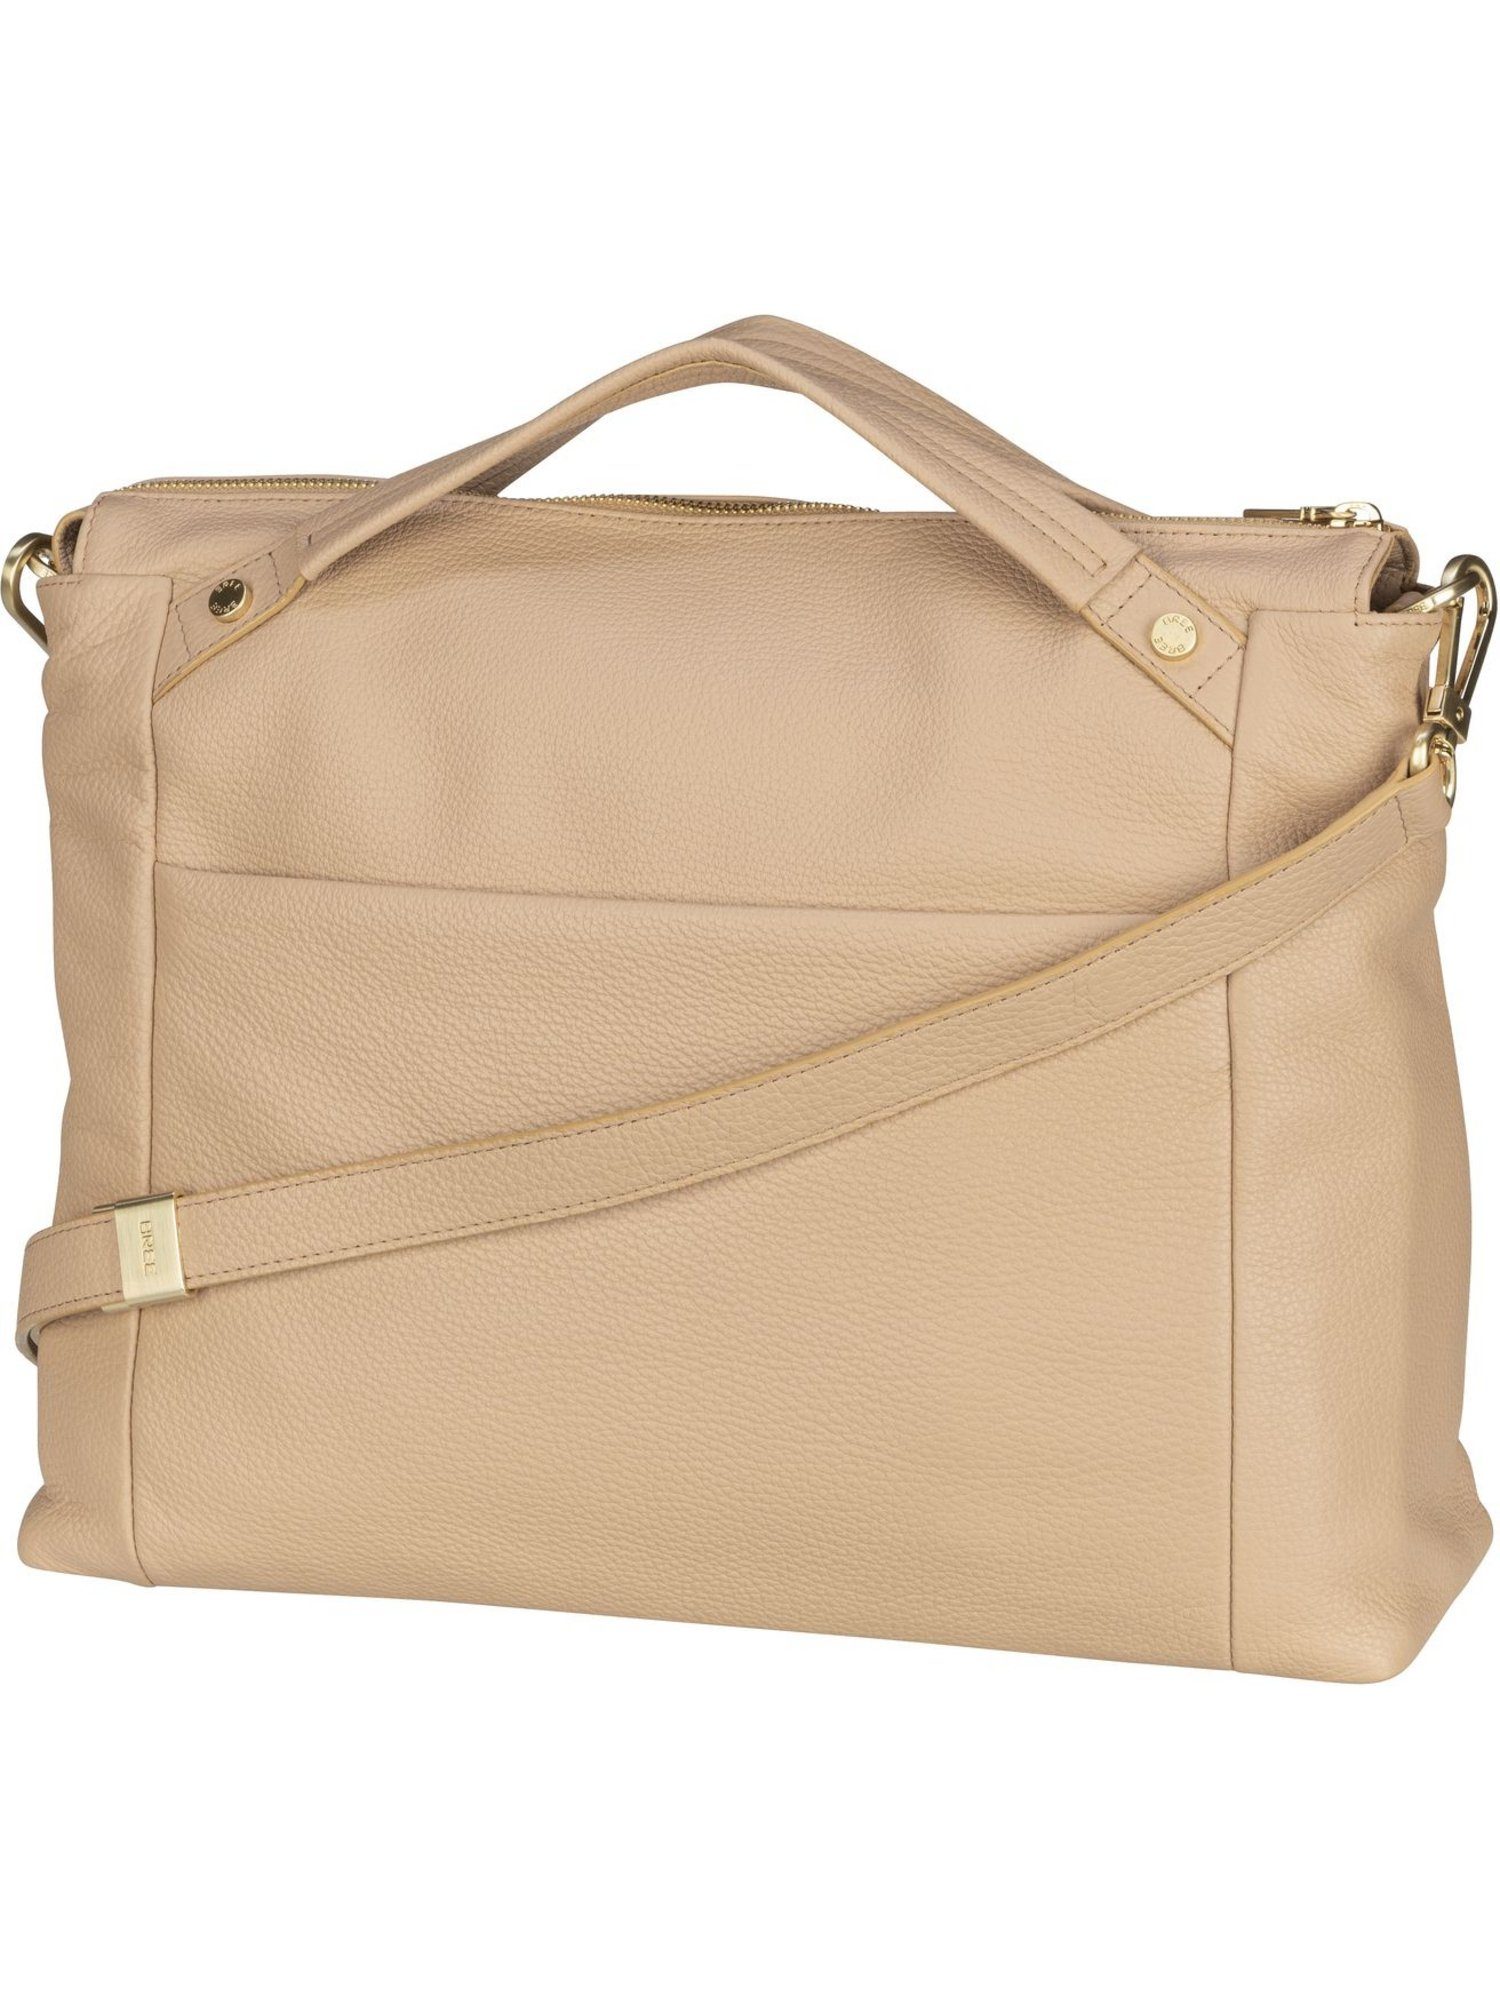 BREE Handtasche Tana 5, Shopper online kaufen | OTTO